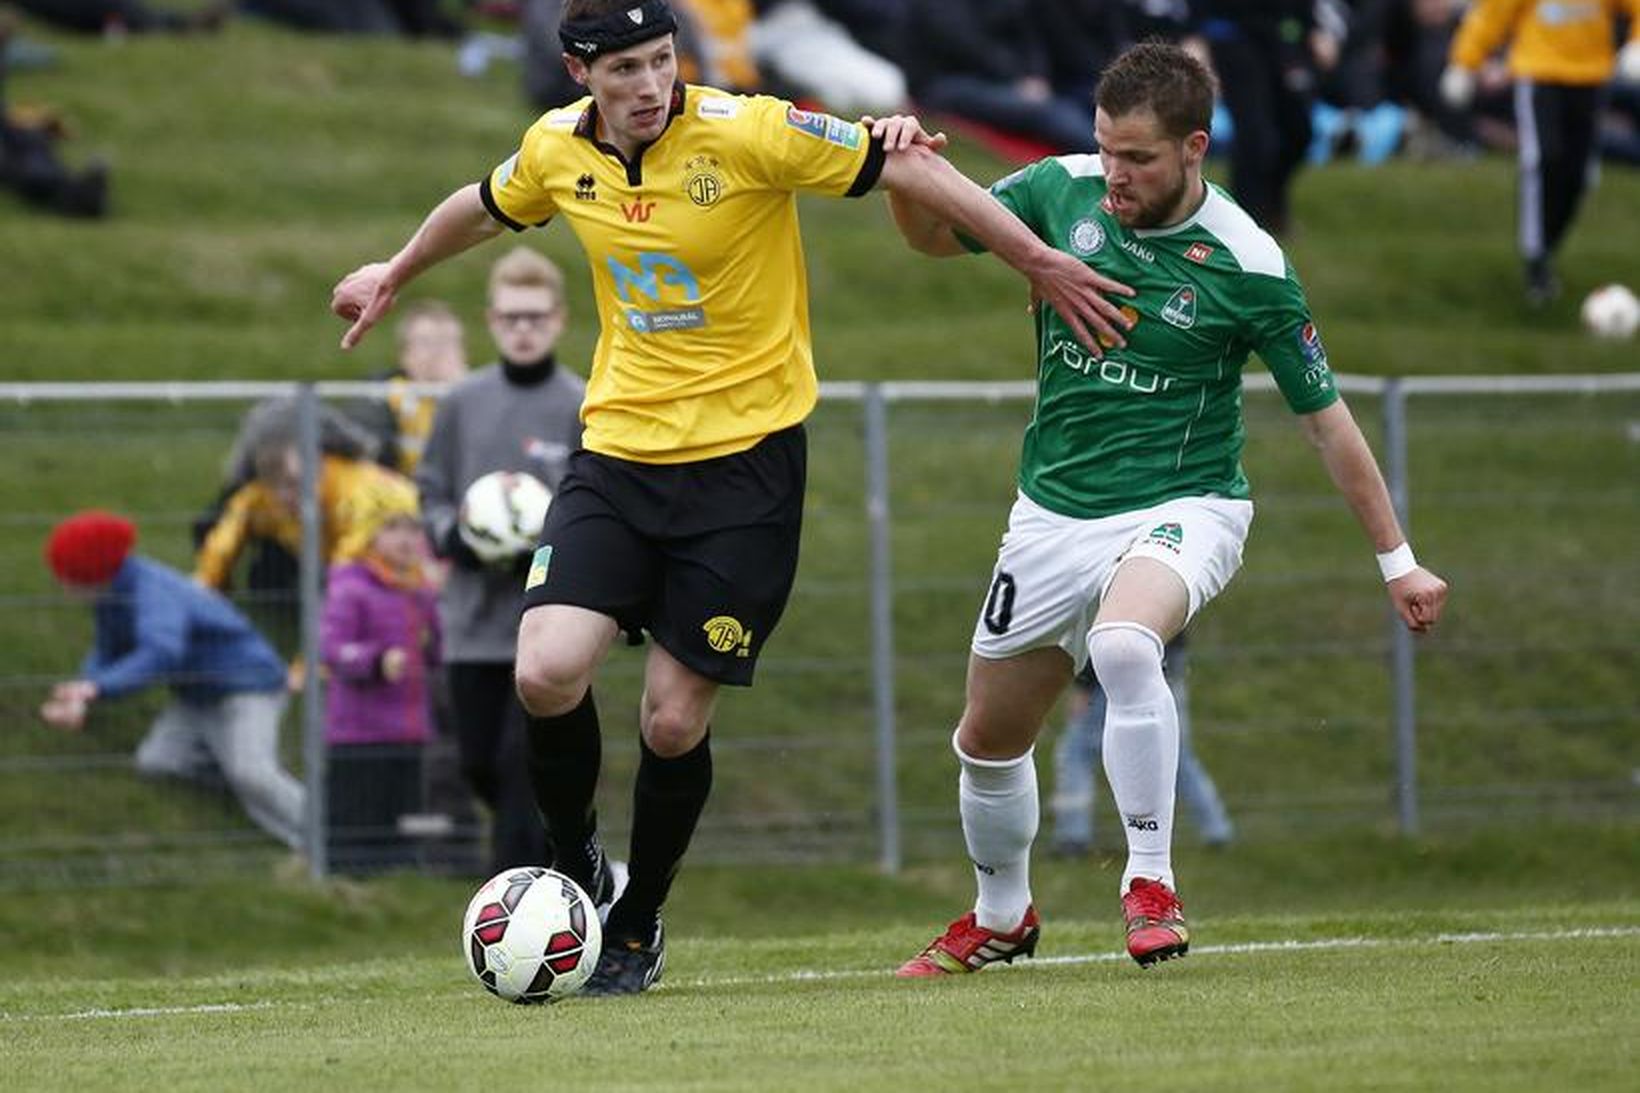 Darren Lough með boltann í leik gegn Breiðabliki.